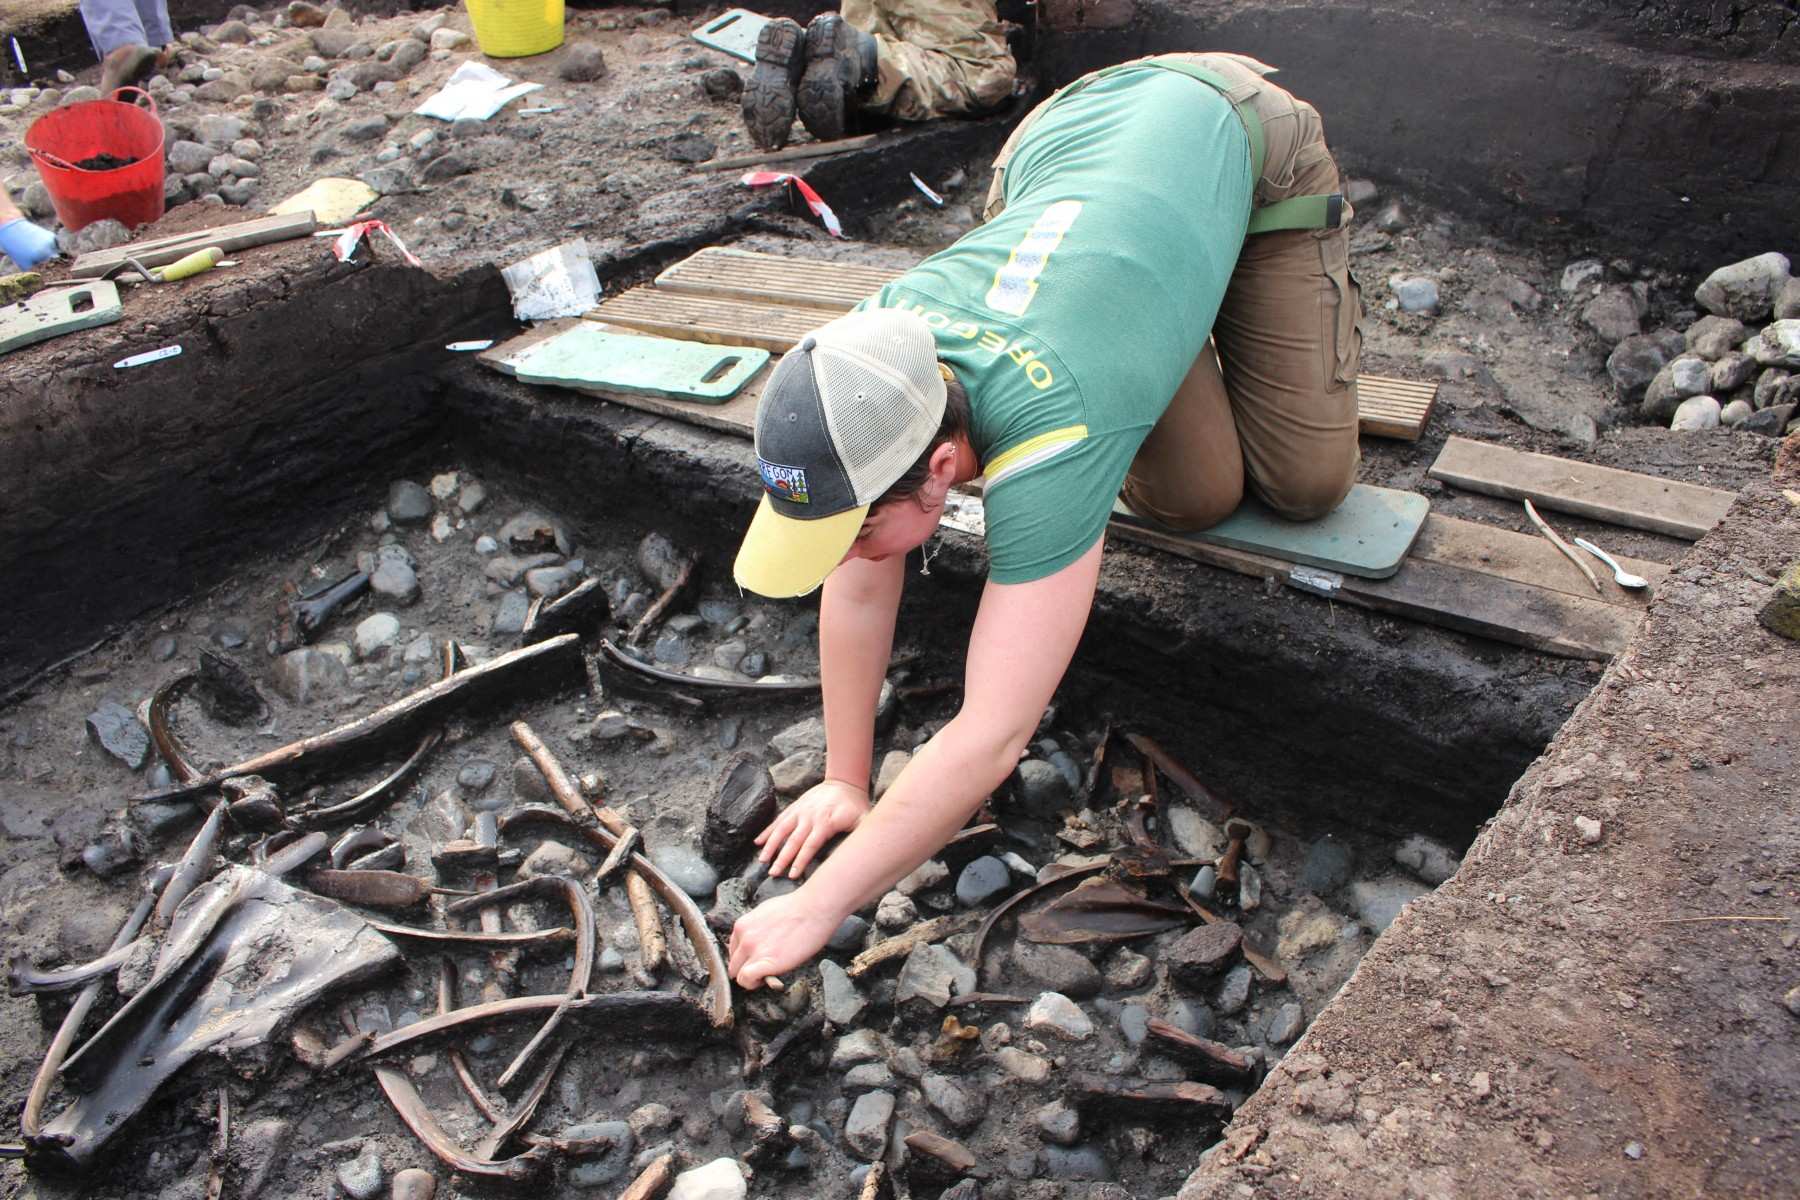 स्कारबोरो के पास साइट पर खुदाई के दौरान जानवरों की हड्डियों, औजारों और हथियारों के साथ-साथ लकड़ी के काम के दुर्लभ साक्ष्य का पता चला